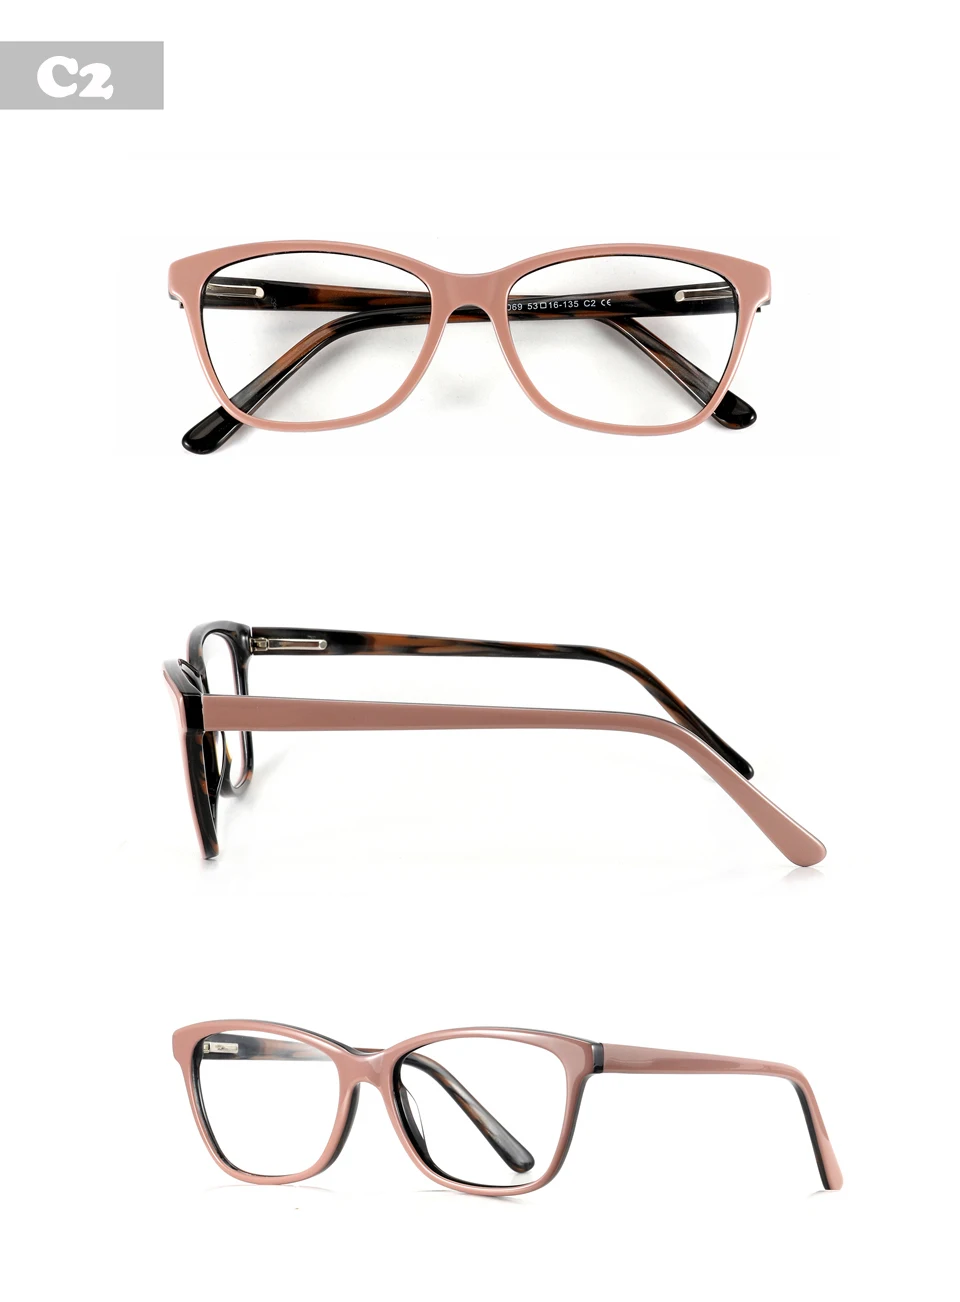 Рецепт оптический, ацетатный глаз оправа Новая мода солнцезащитные очки для женщин для бренд дизайн унисекс очки для чтения